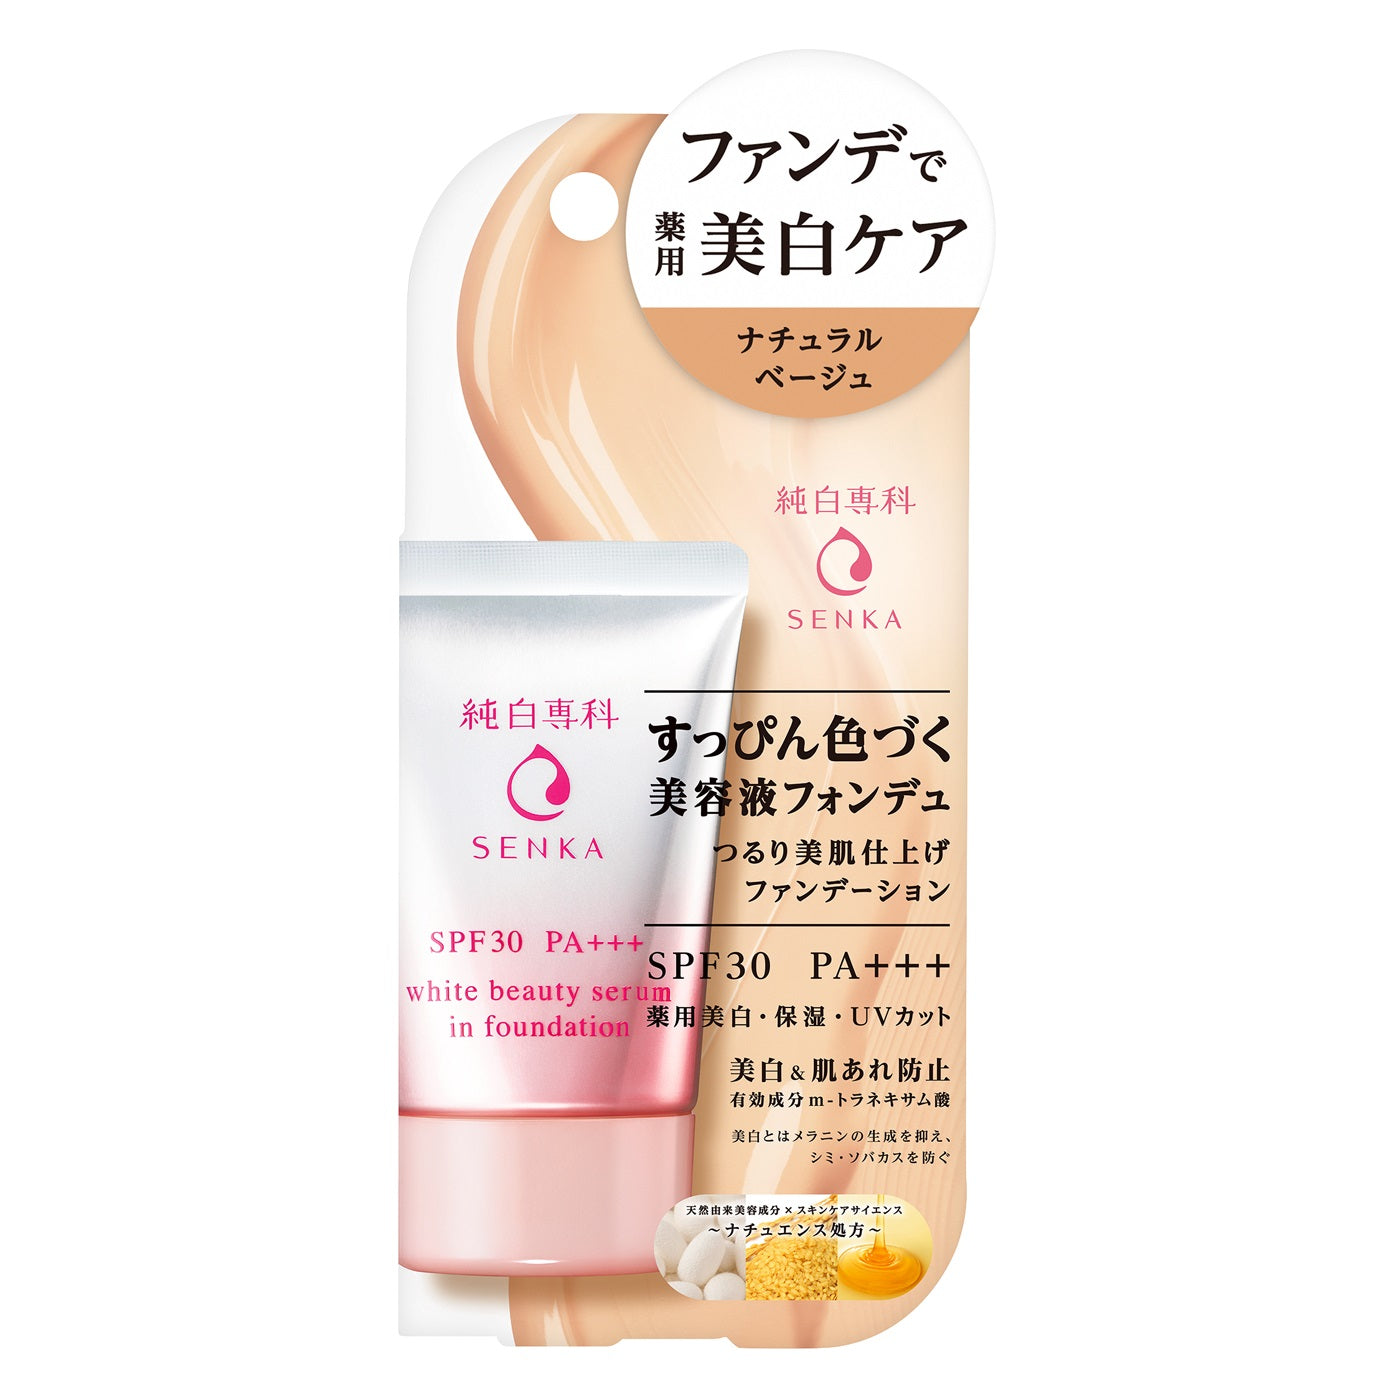 日本Shiseido資生堂 SENKA 純白專科雪白美肌精華 粉底液 